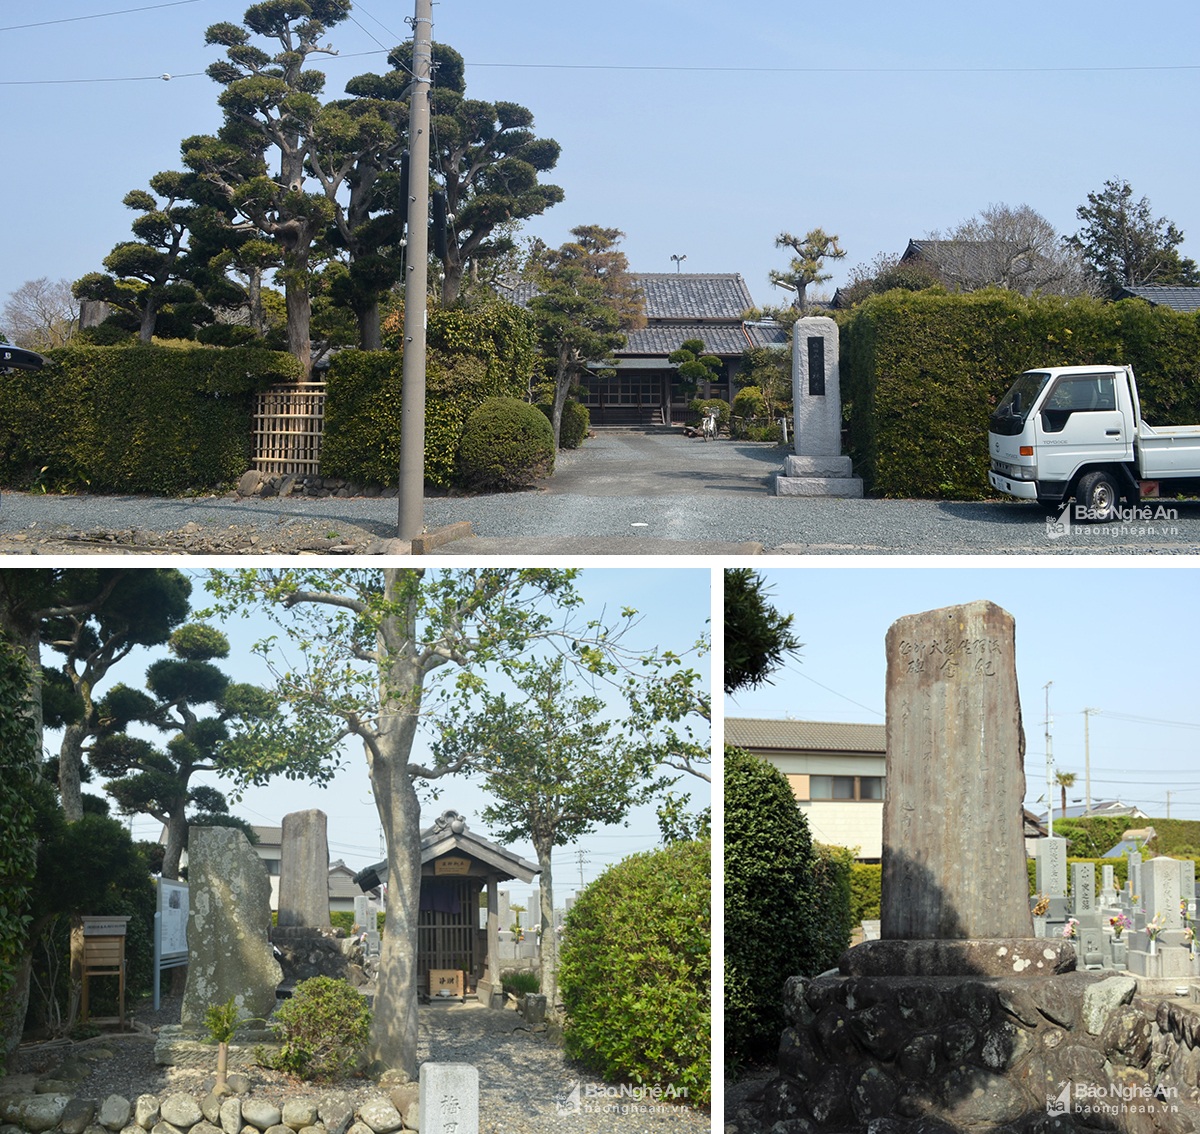 Chùa của làng Higashi Asaba và nơi Cụ Phan Bội Châu đặt bia Báo ân Bác sỹ Asaba.